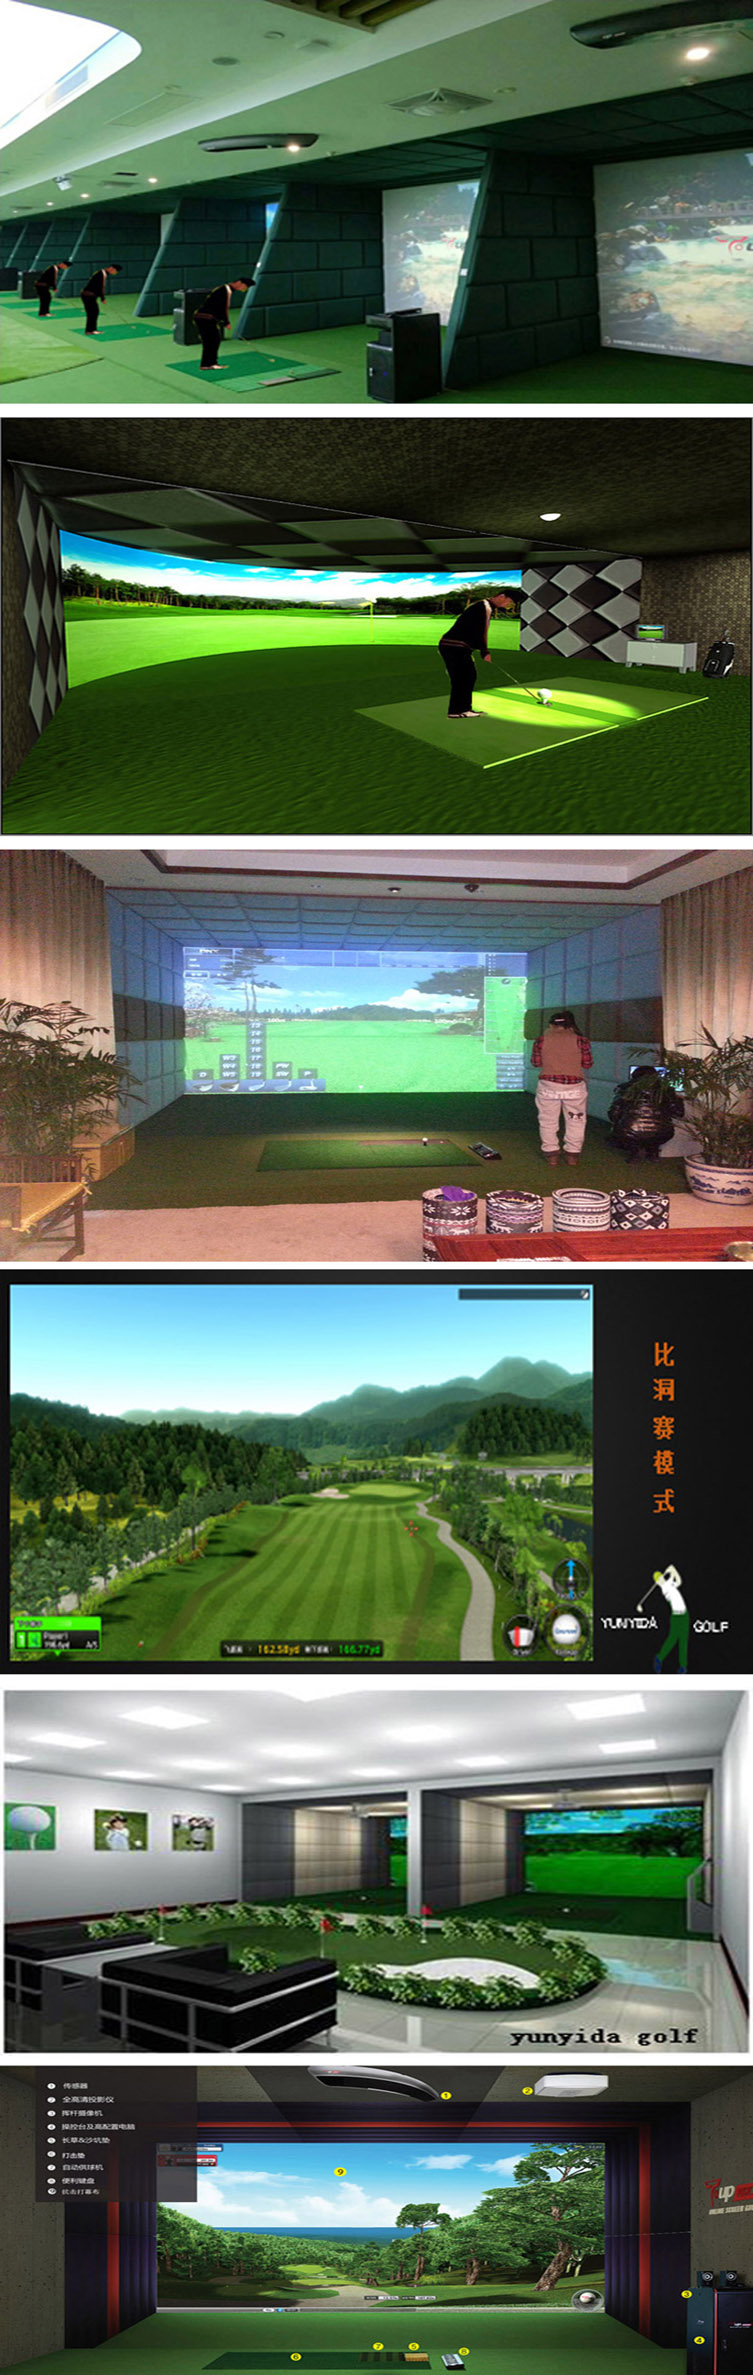 室内高尔夫模拟练习 001.jpg